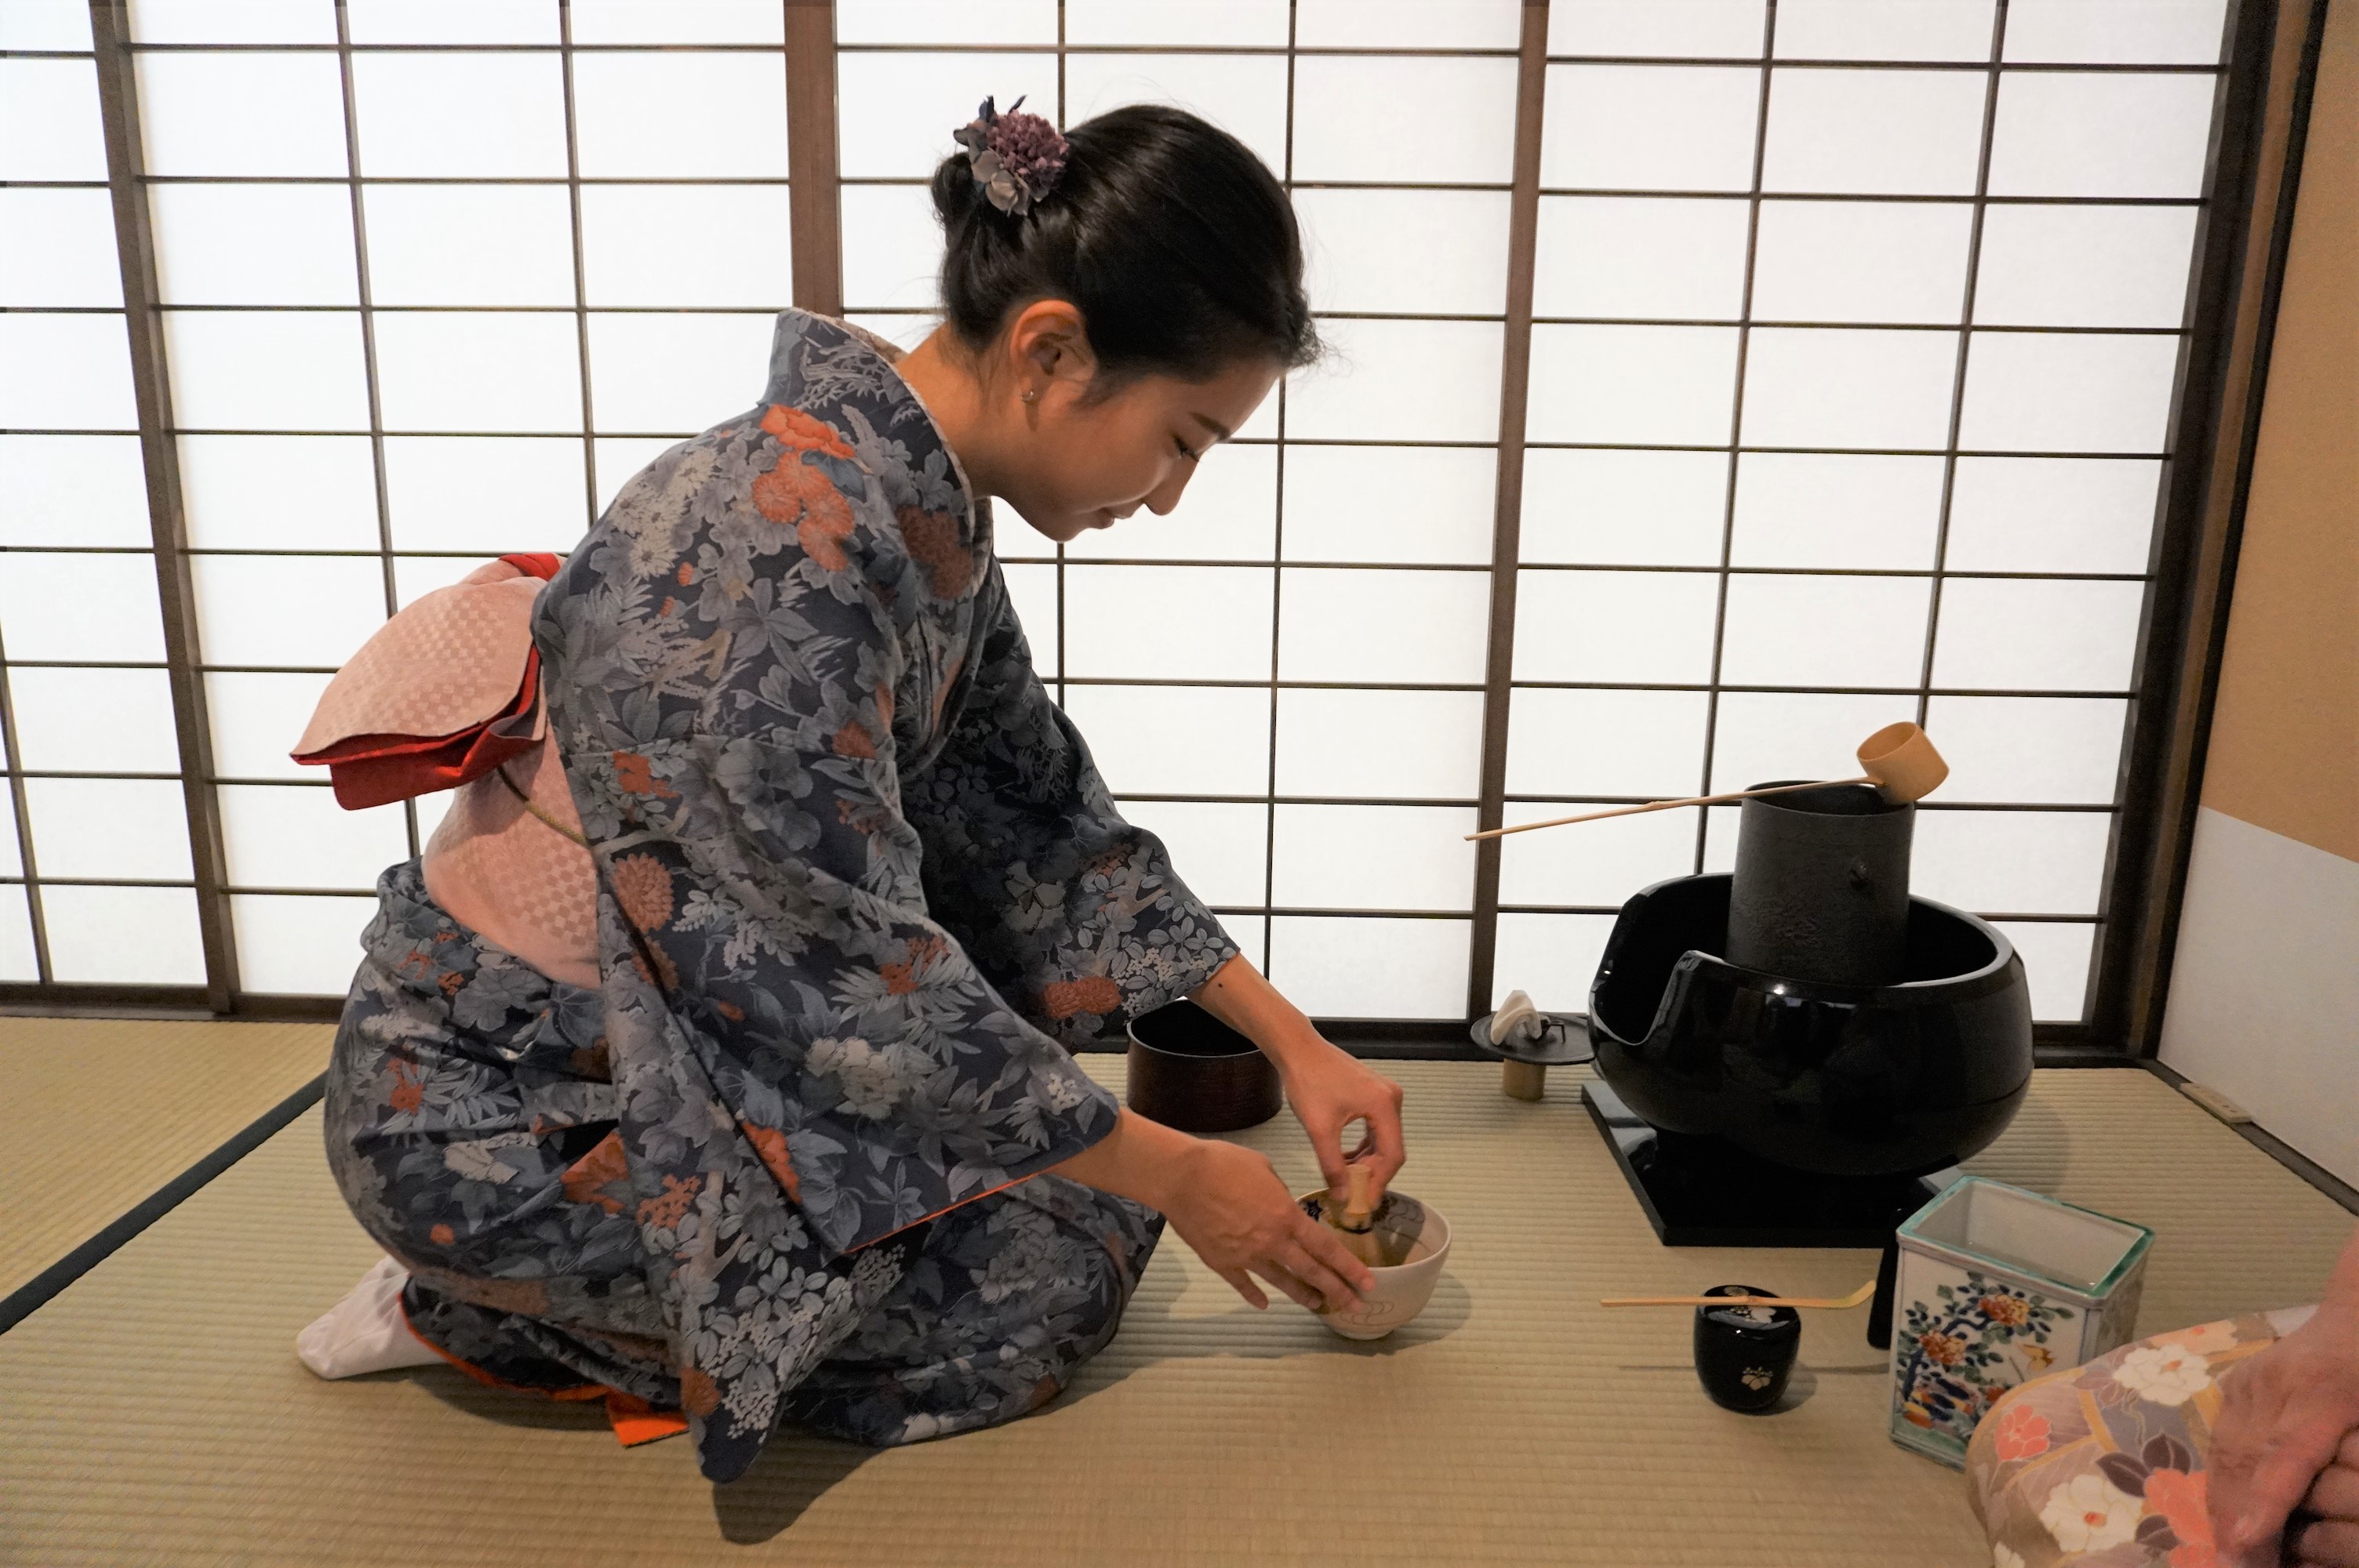 【平日限定】和カフェ浅草茶禅浅草で着物を着て茶道体験